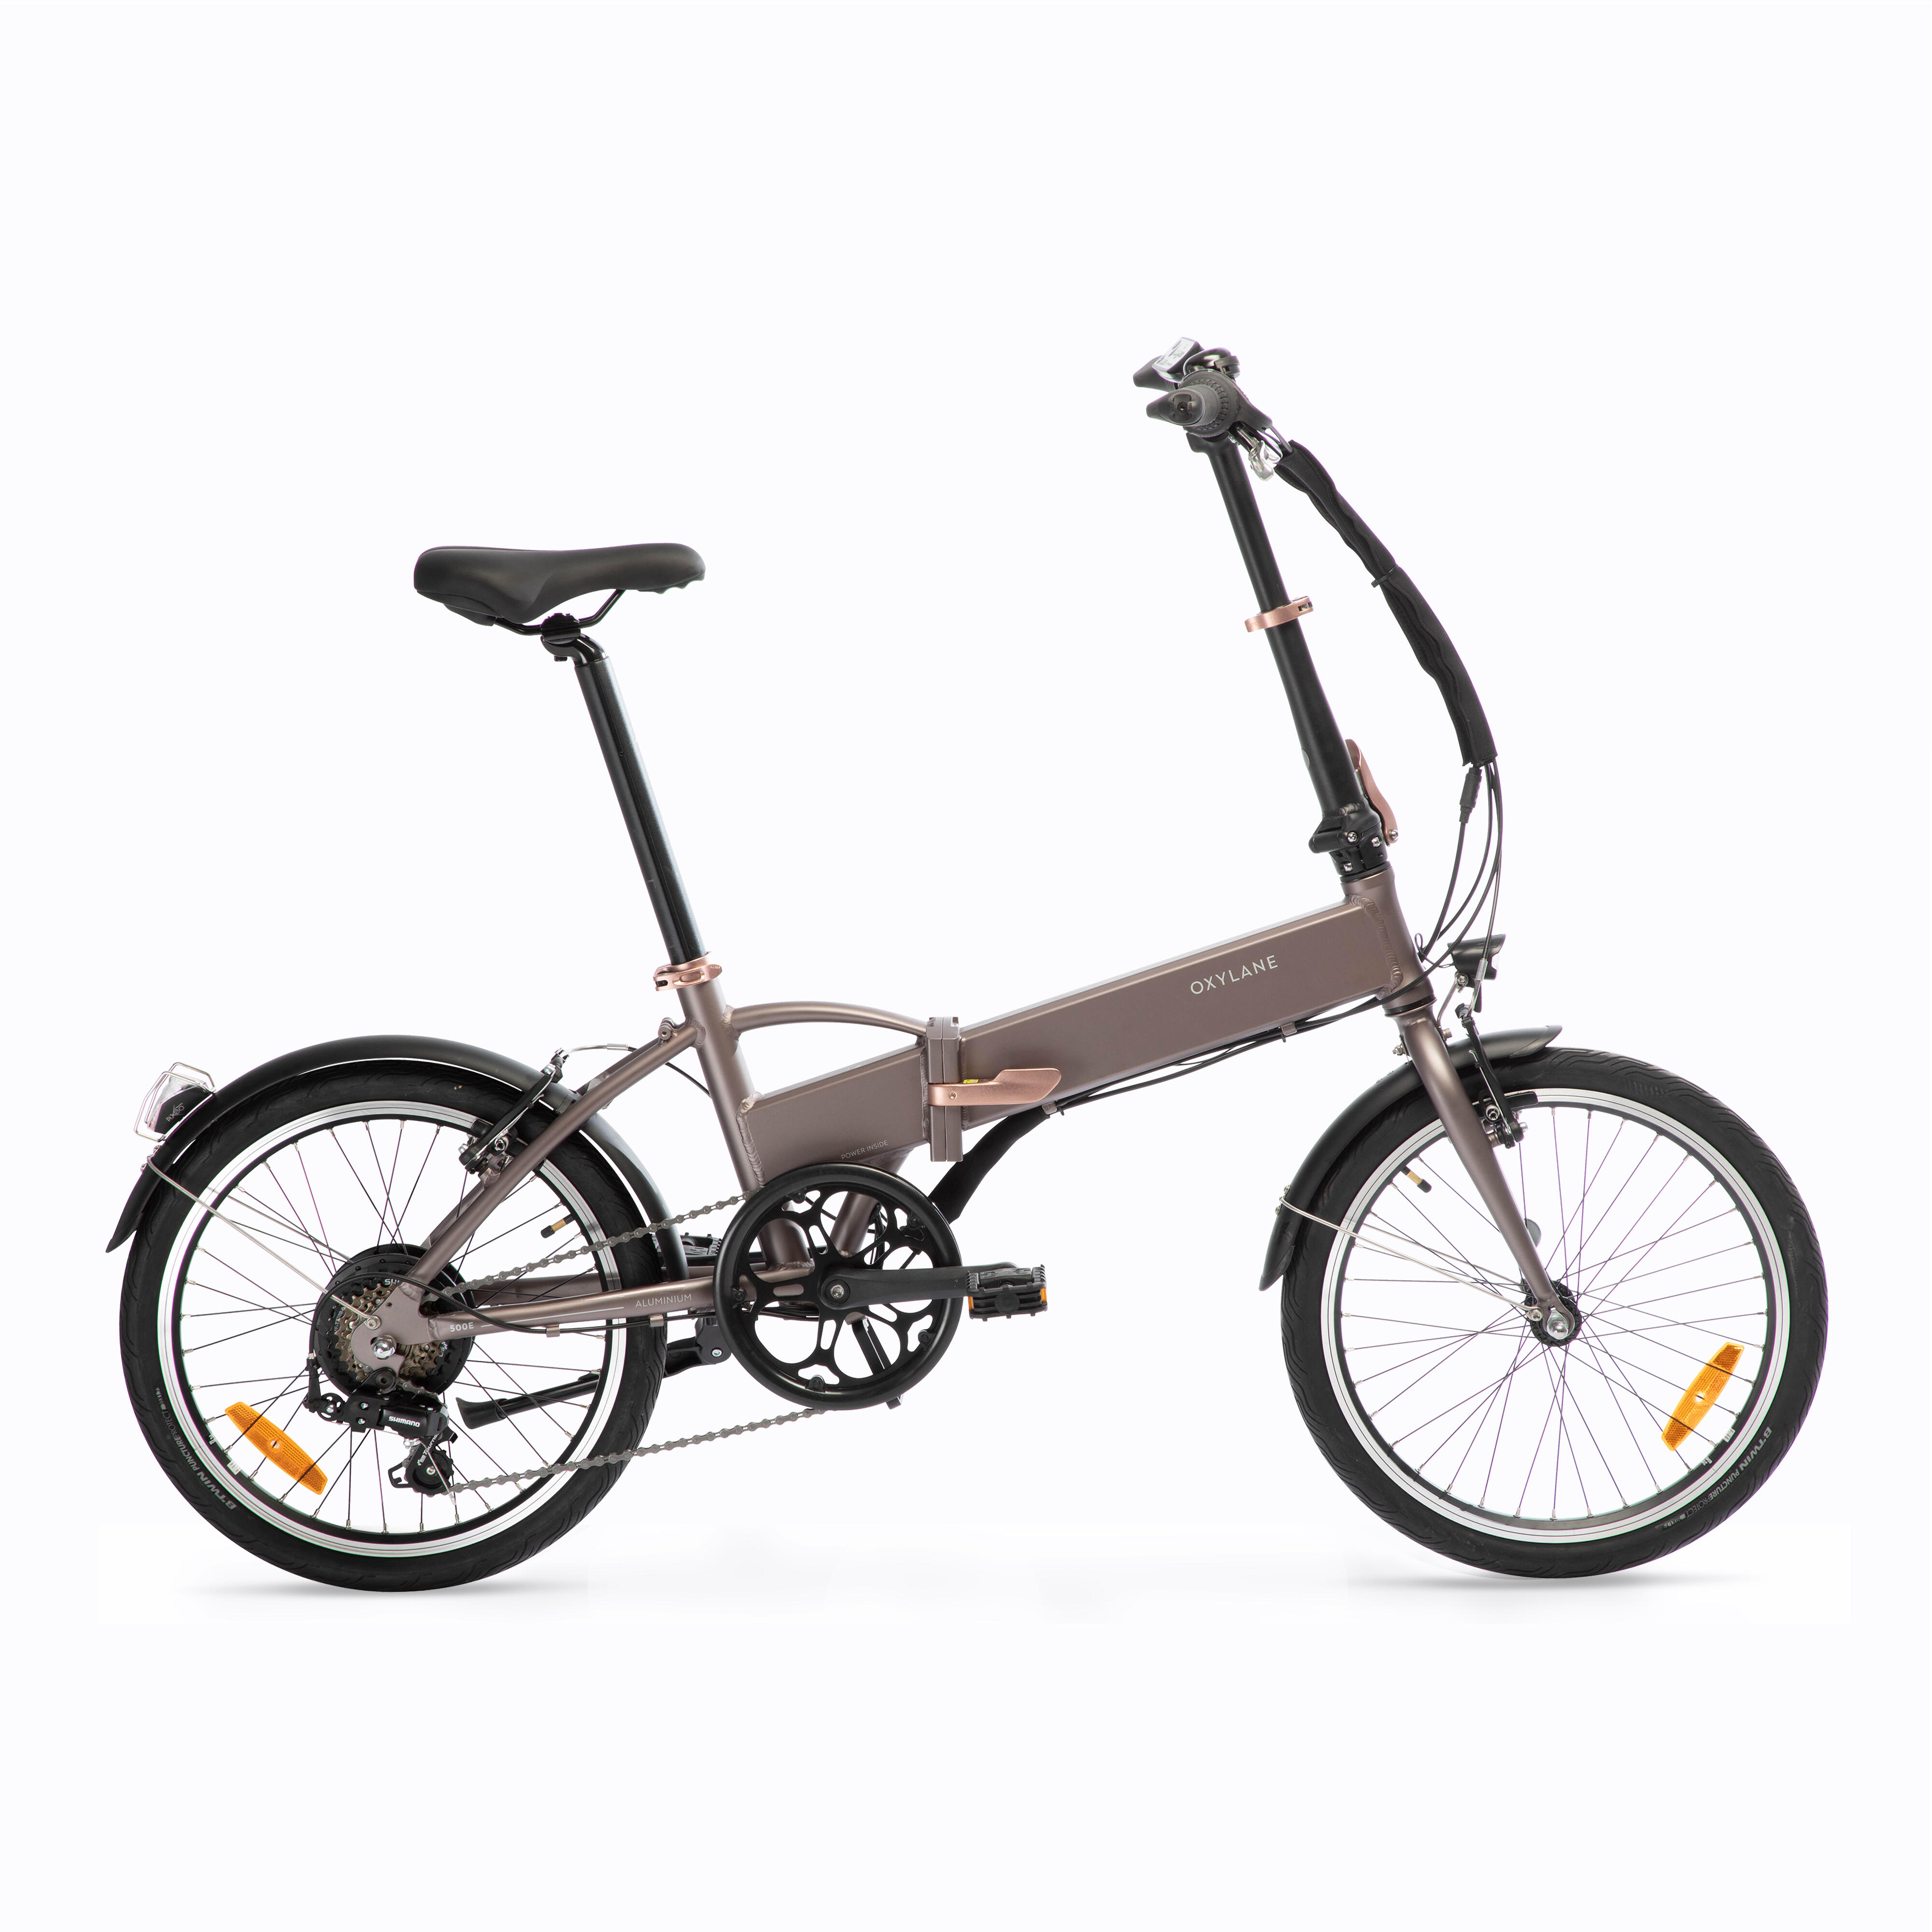 Bicicletă pliabilă cu asistență electrică TILT 500 E BTWIN